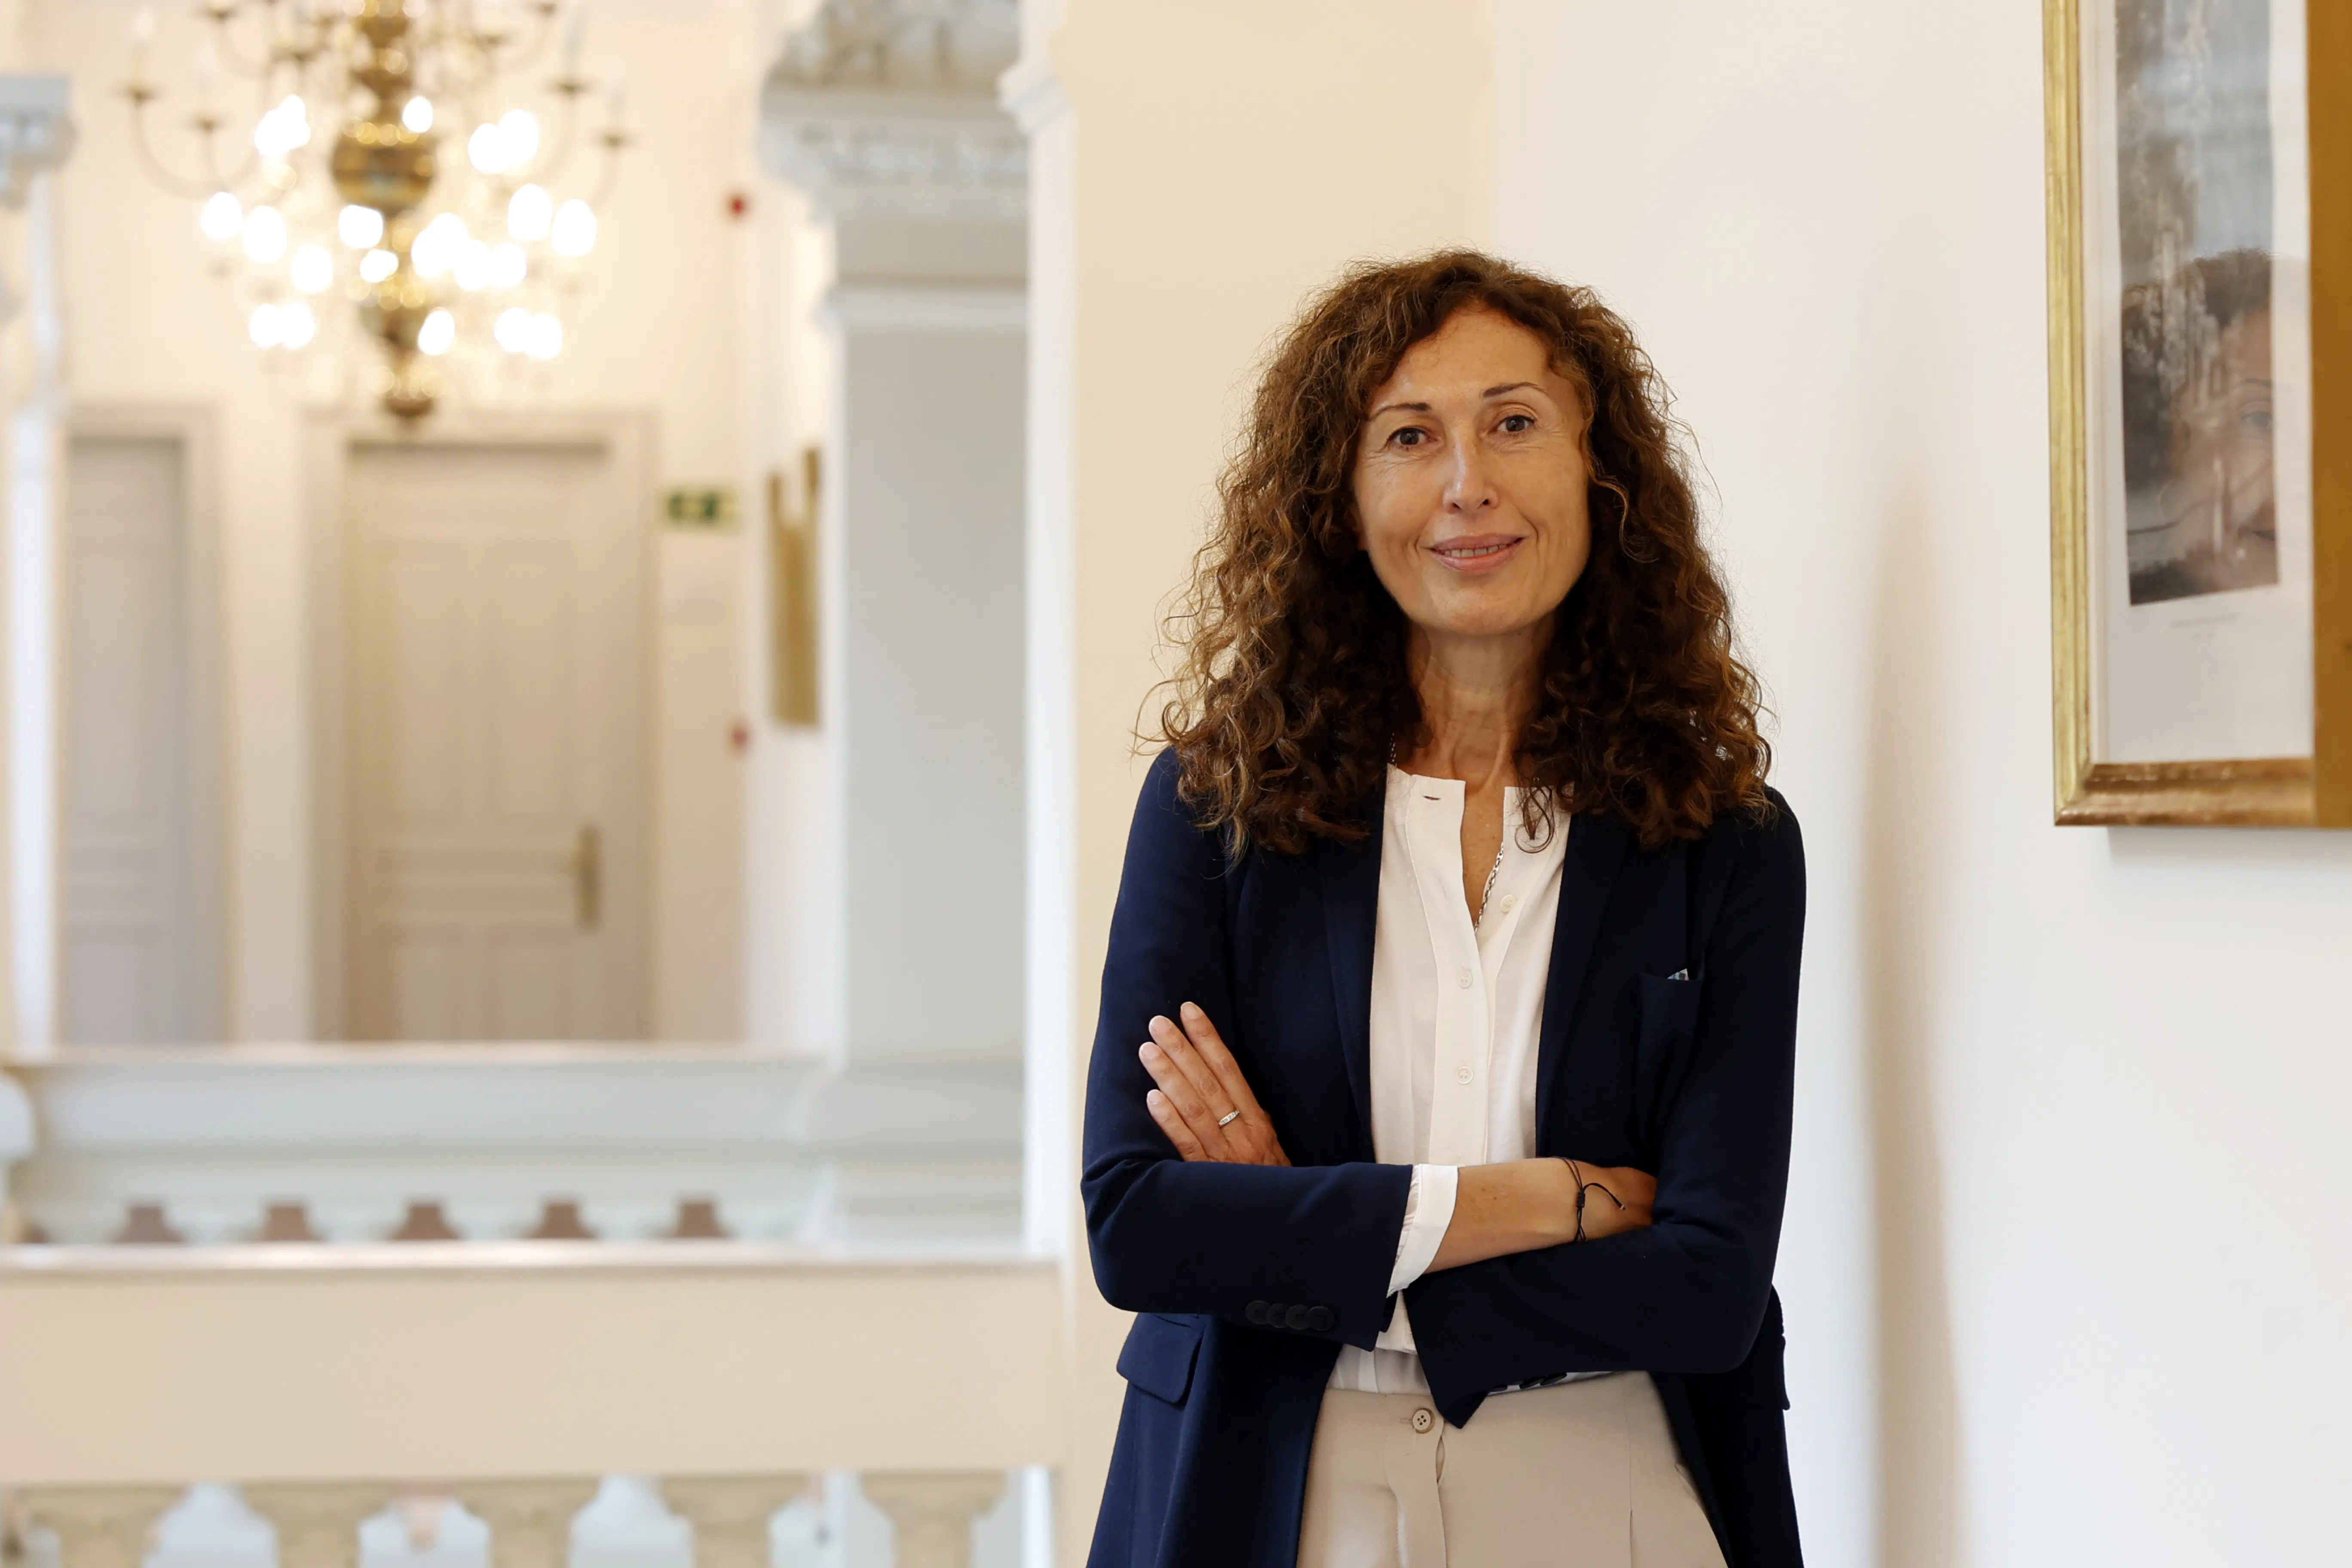 La fiscal Ana Isabel García León, nueva jefa de la Secretaría Técnica de la Fiscalía General del Estado